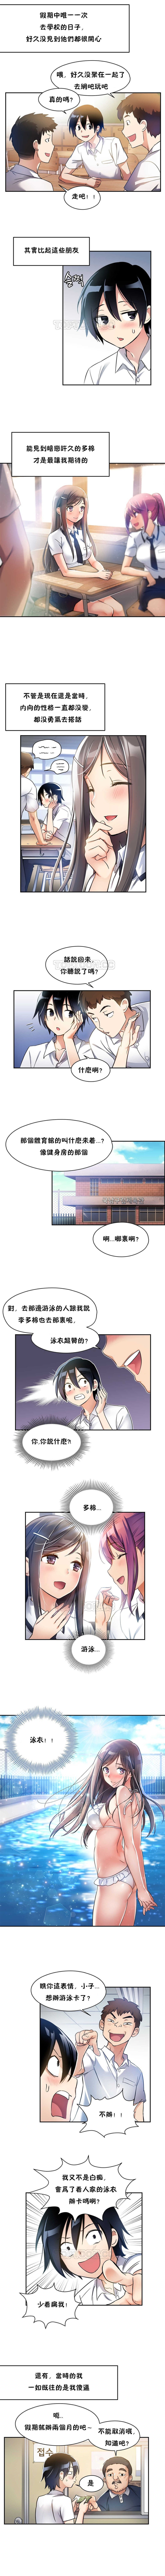 初恋豚鼠 1-30 中文翻译（更新中） page 20 full